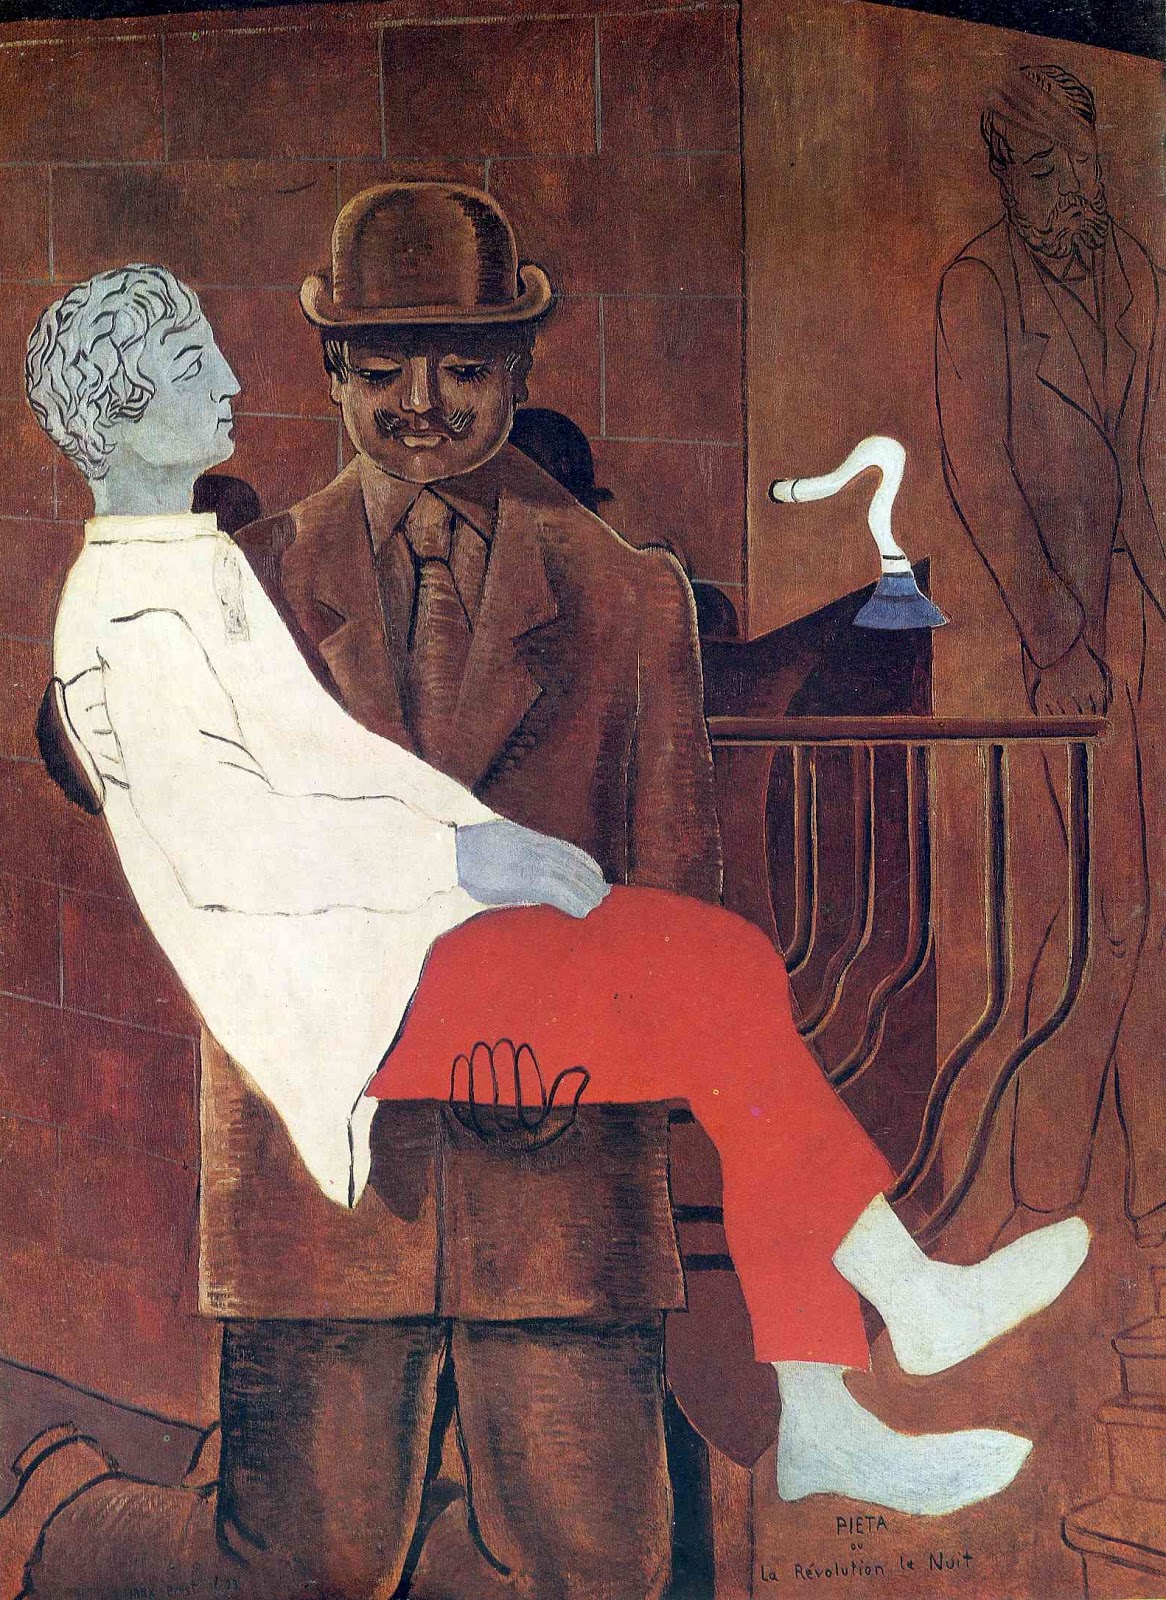 Max+Ernst-1891-1976 (72).jpg